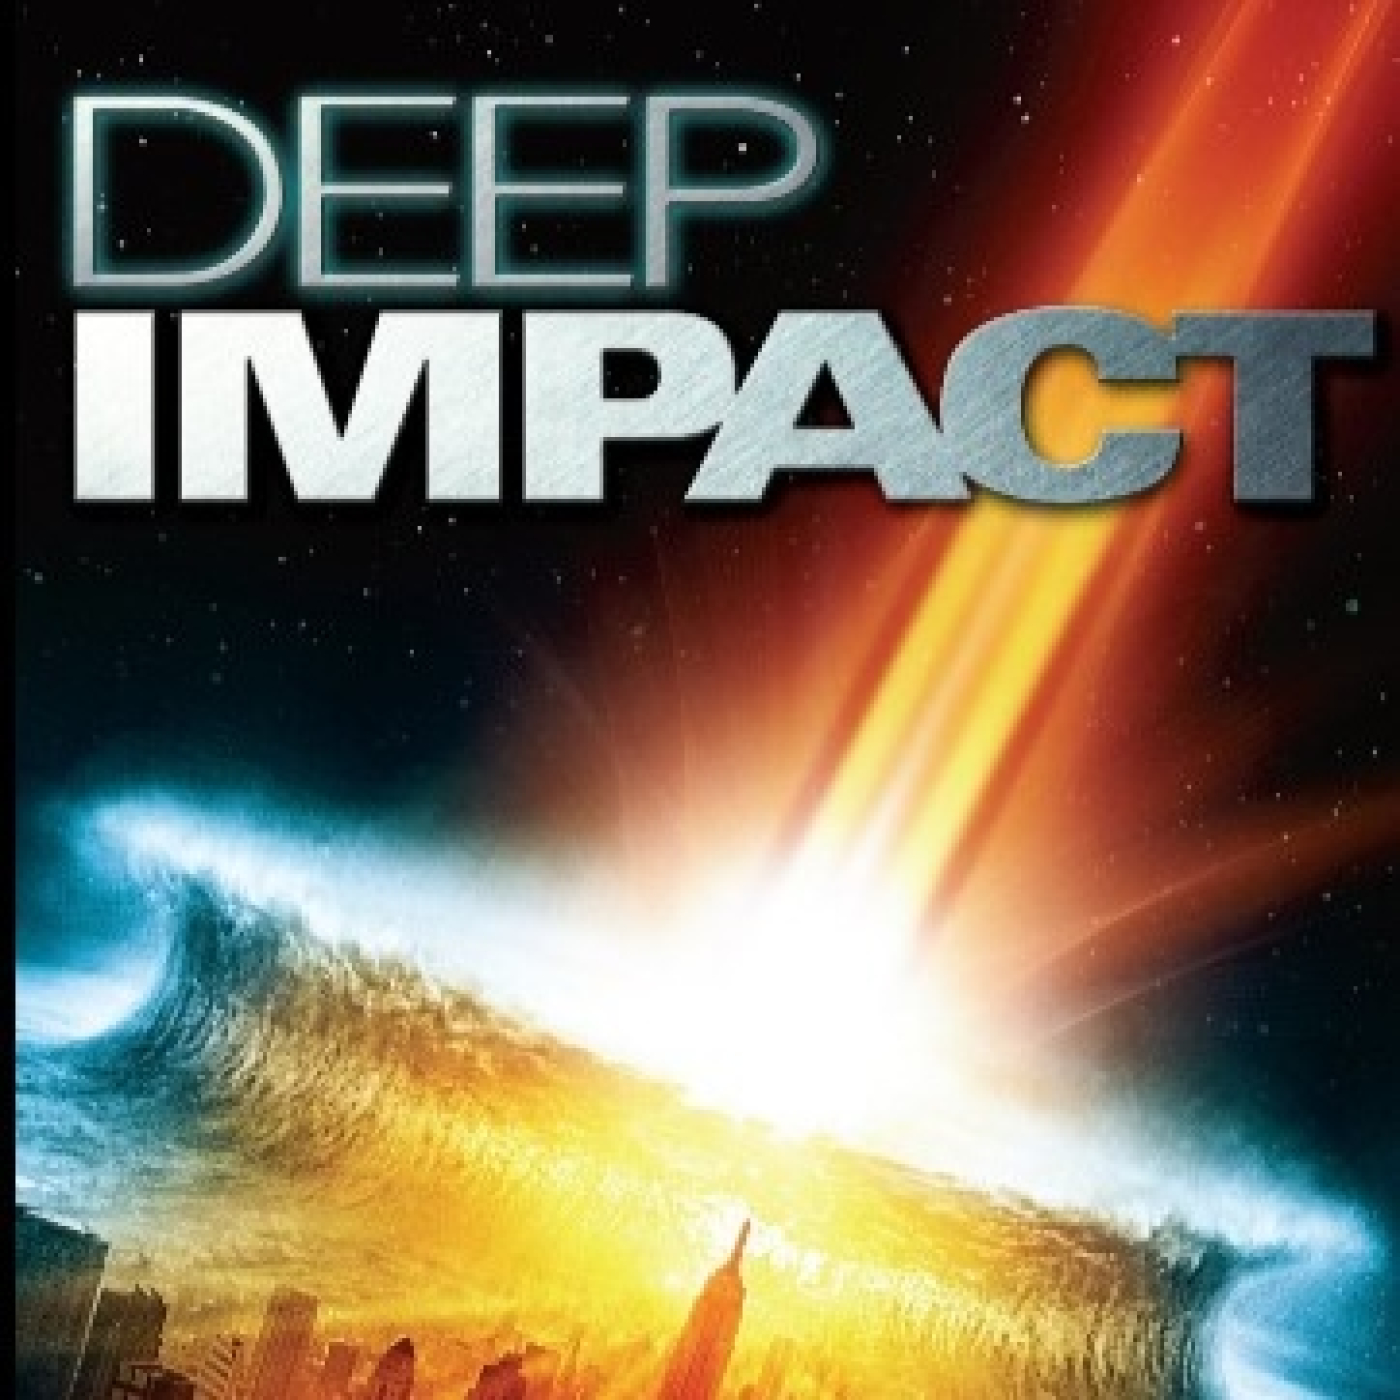 Peticiones Oyentes - Deep Impact -vo- 1998